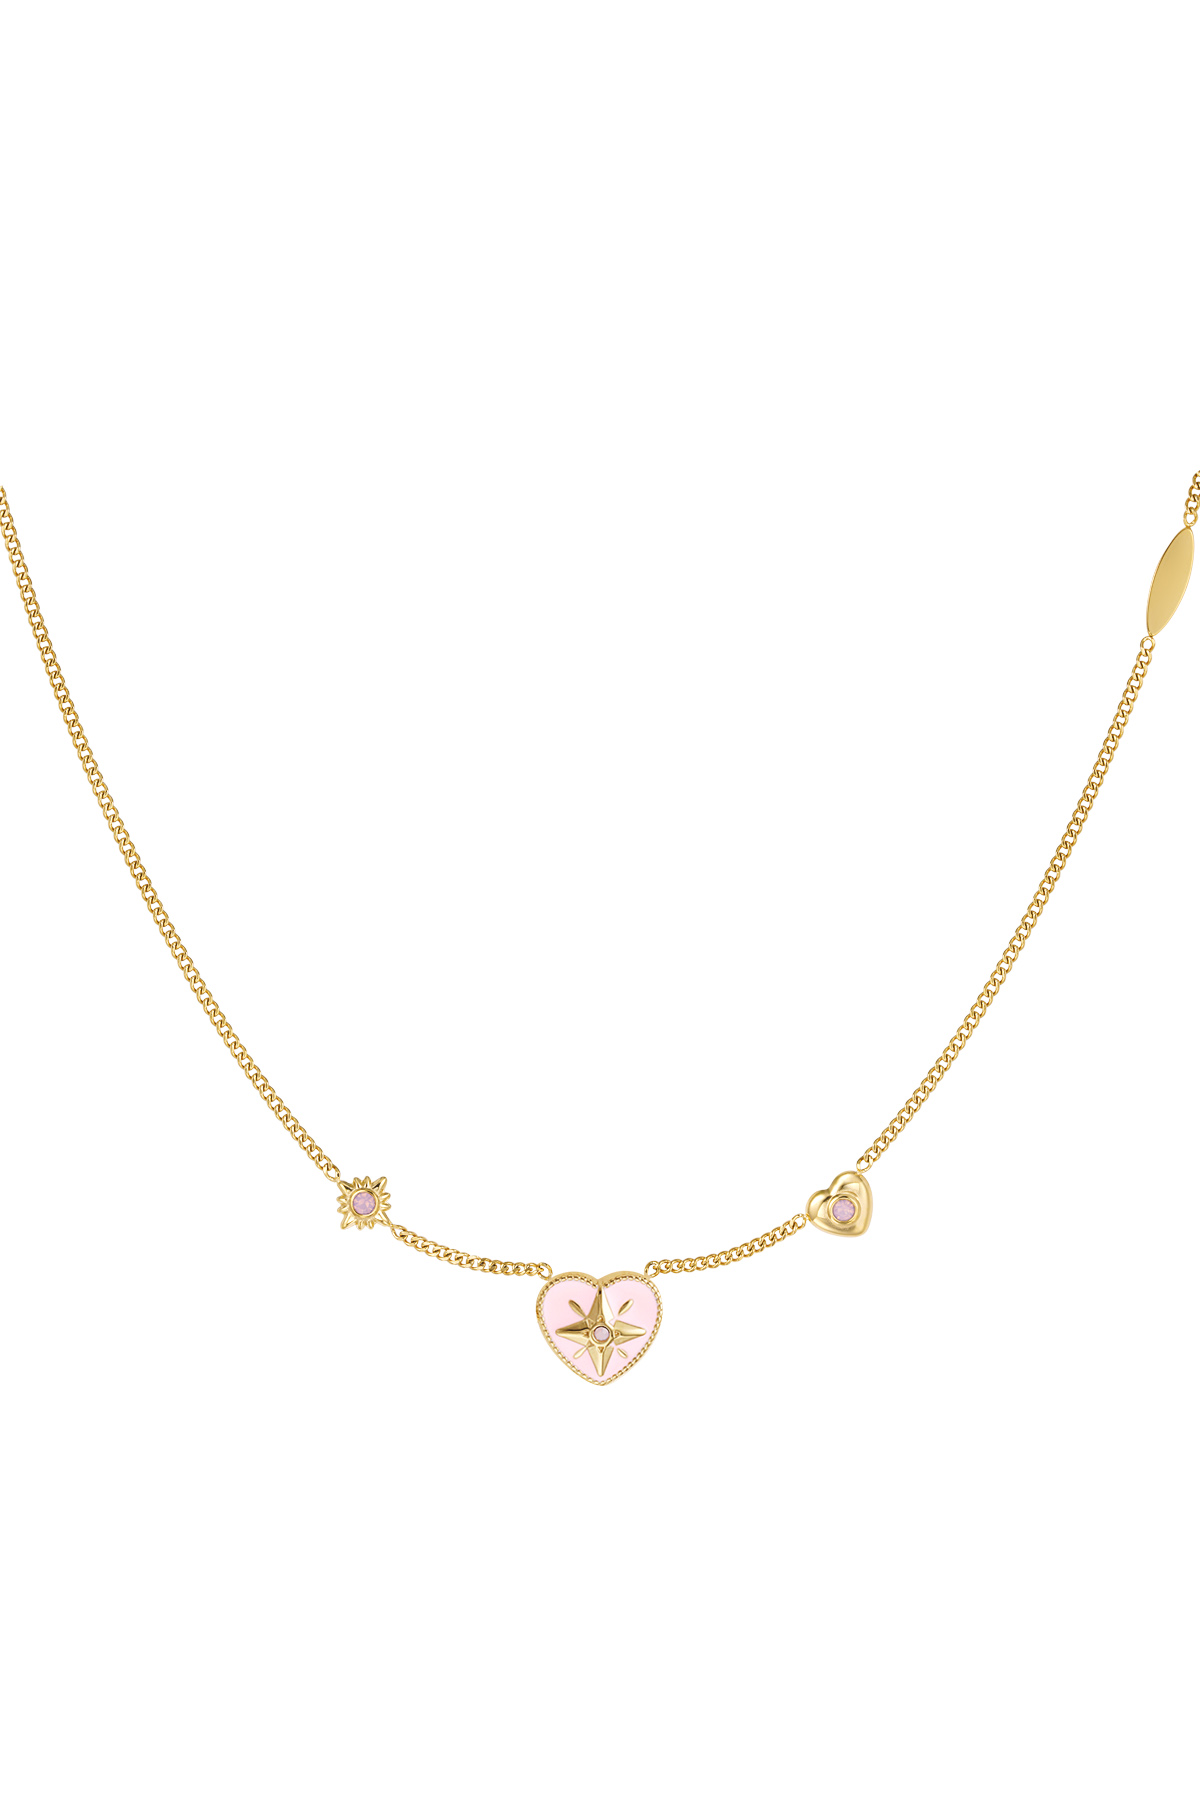 Halskette Herz mit Steinen - Gold/Rosa h5 